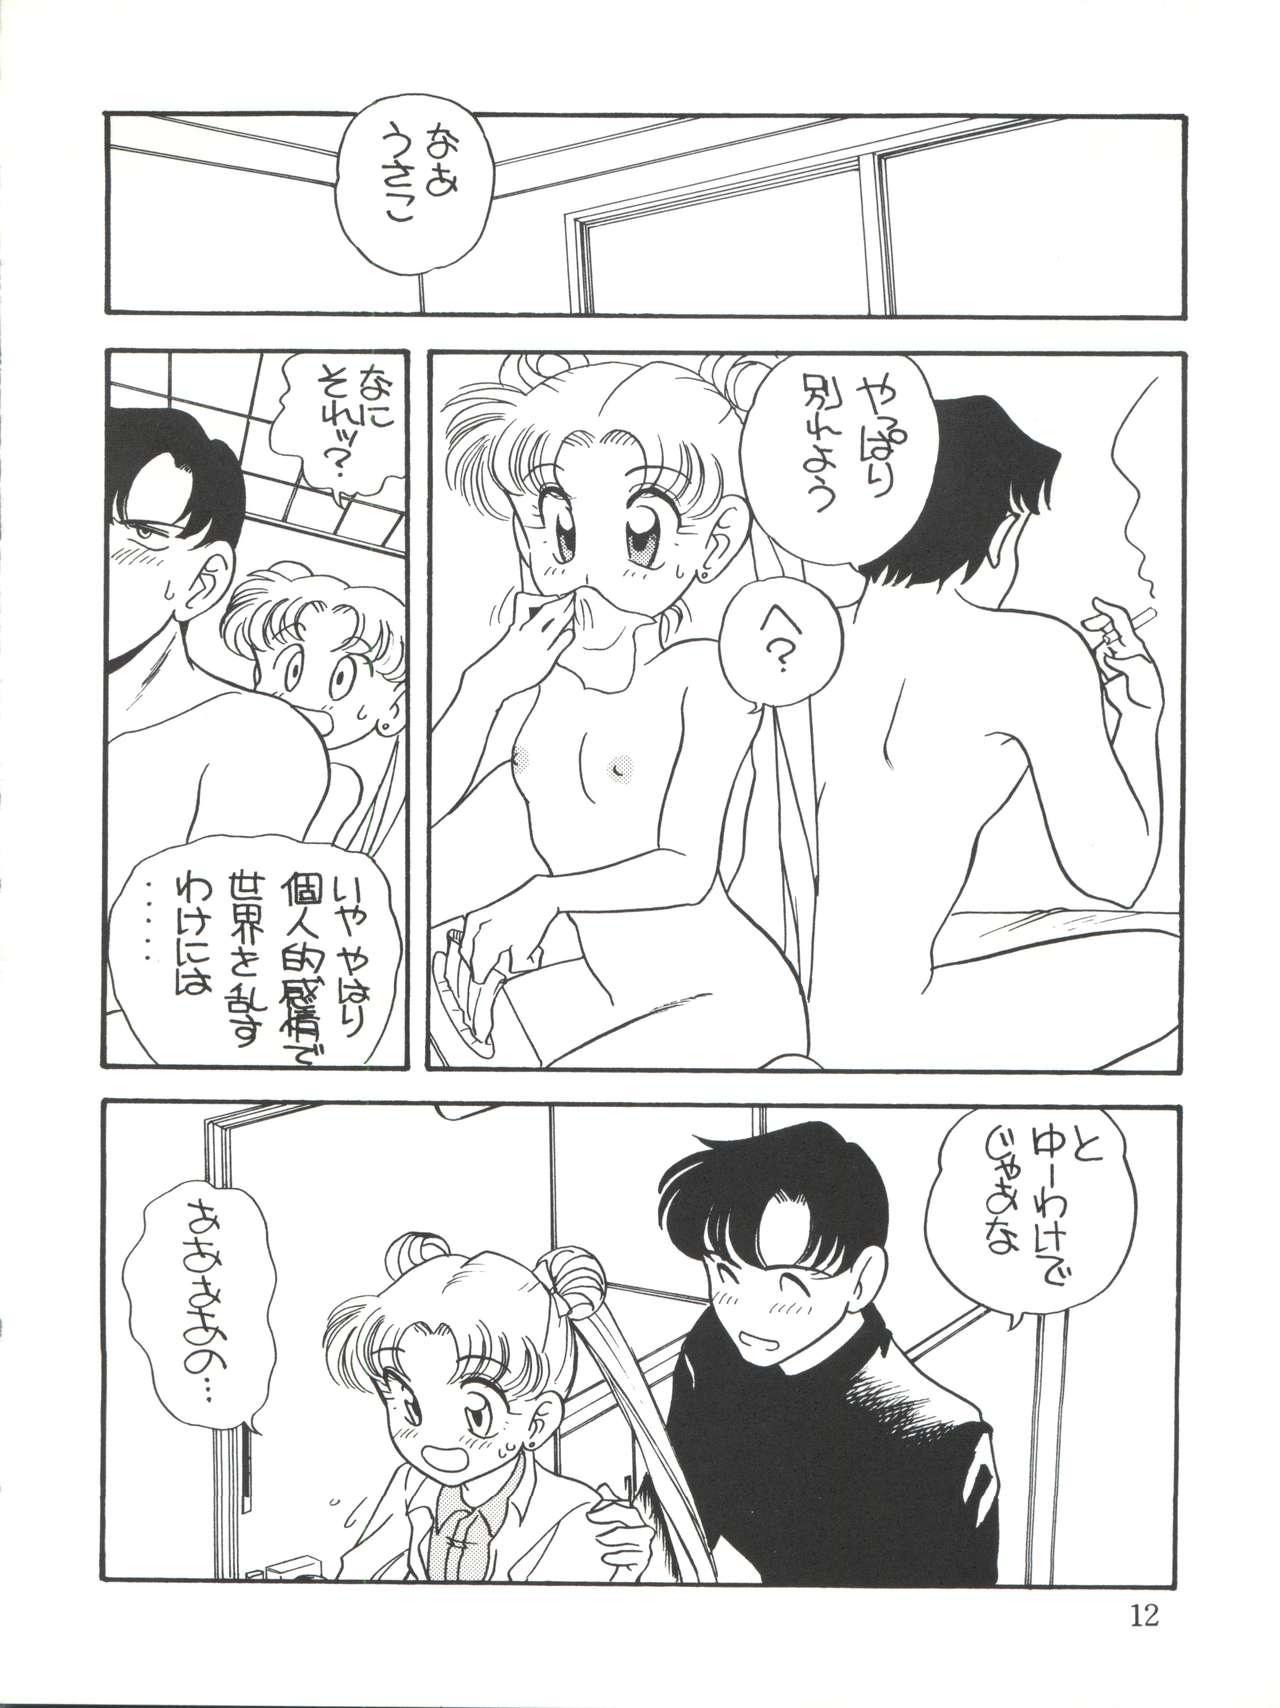 Strip Elfin 9 - Sailor moon Doctor - Page 12